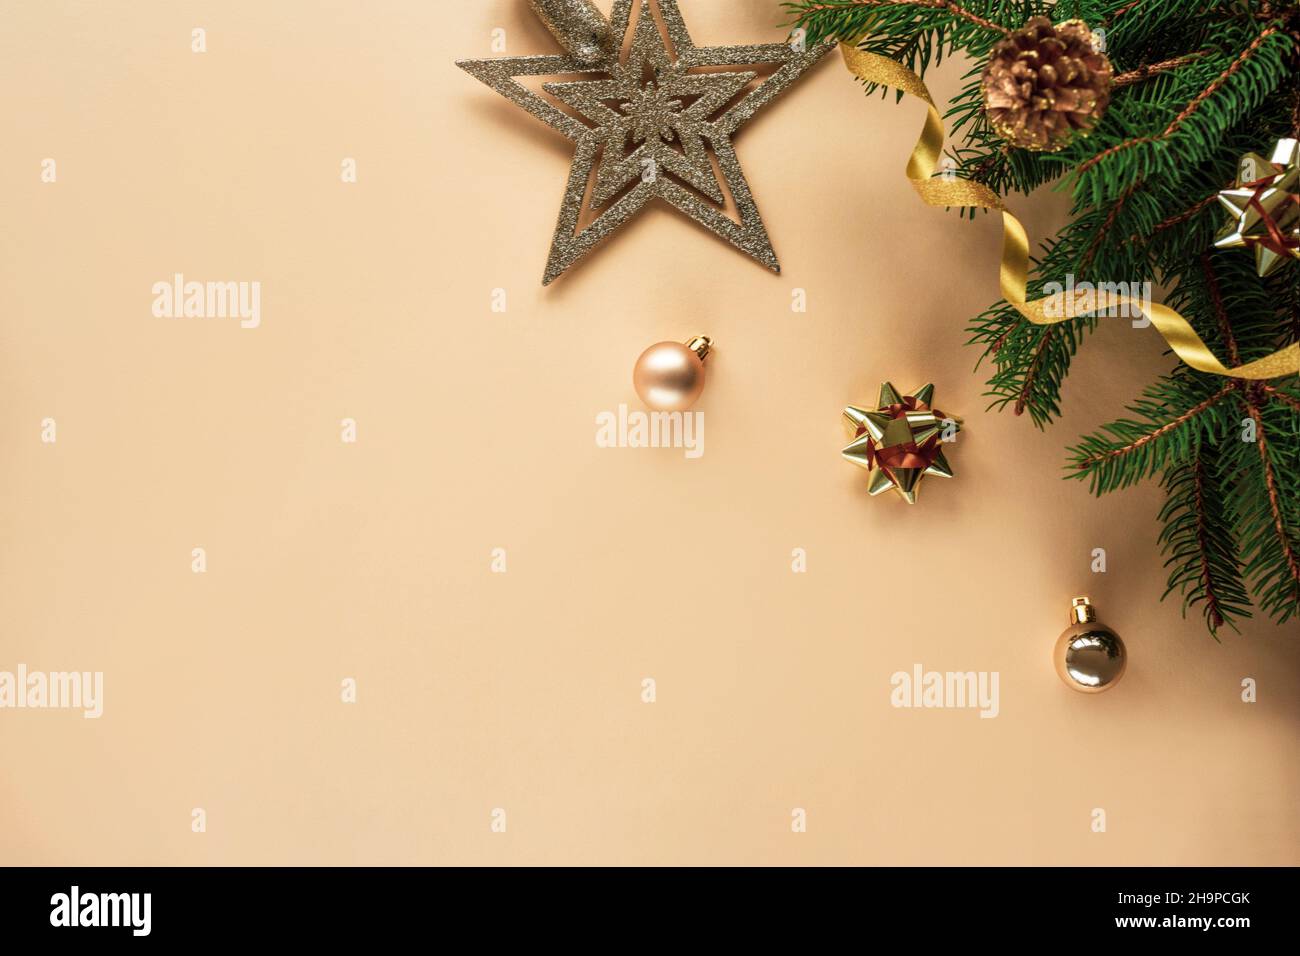 Composizione natalizia su sfondo giallo chiaro con rami di abete, giocattoli, stella e tinsel. Vista dall'alto, disposizione piatta, spazio di copia. Foto Stock